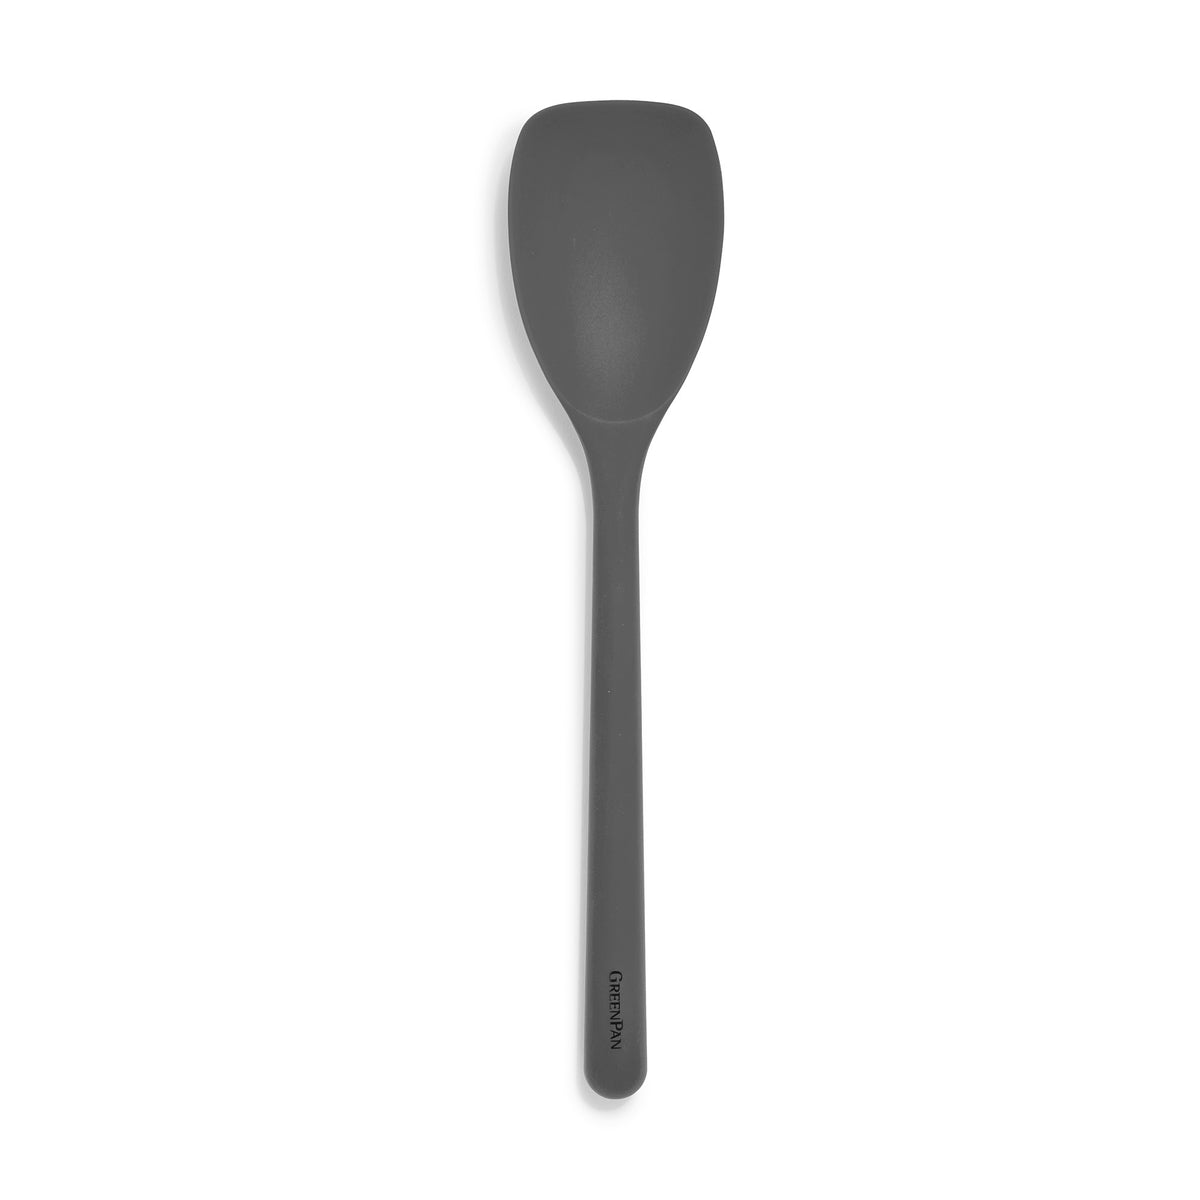 14 Spoon Shape Silicone Scraper